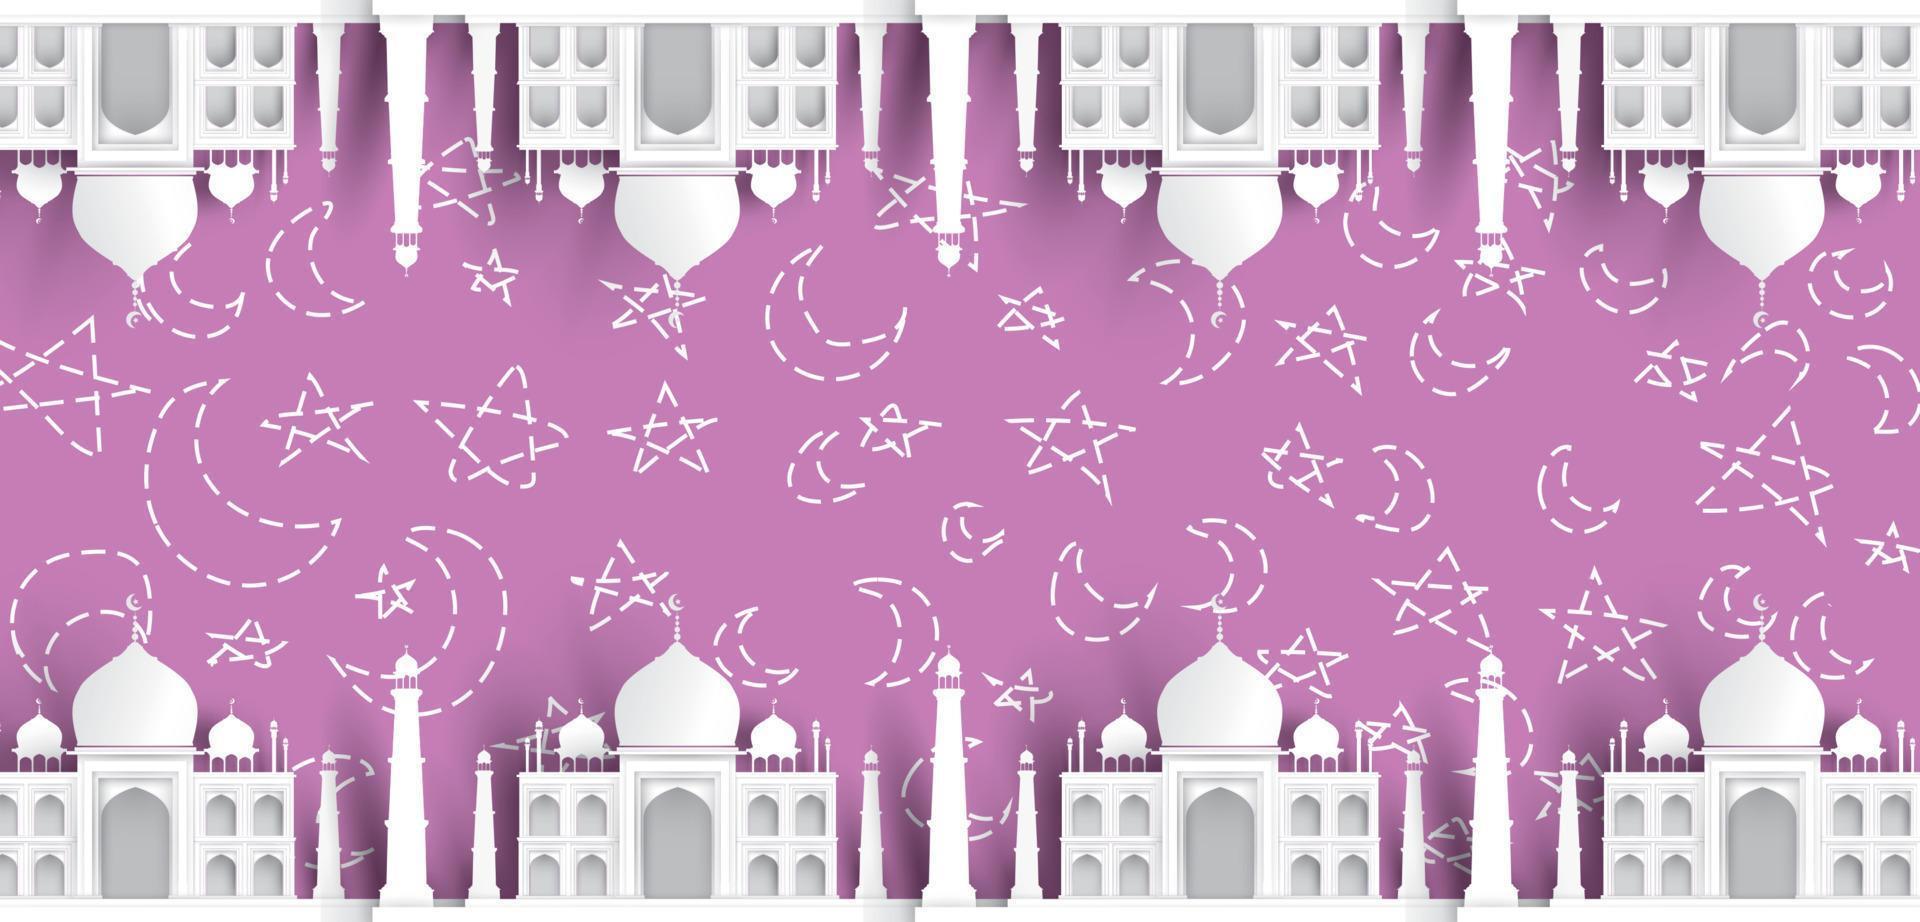 sfondo del testo della moschea vuota, design islamico moderno ed elegante vettore